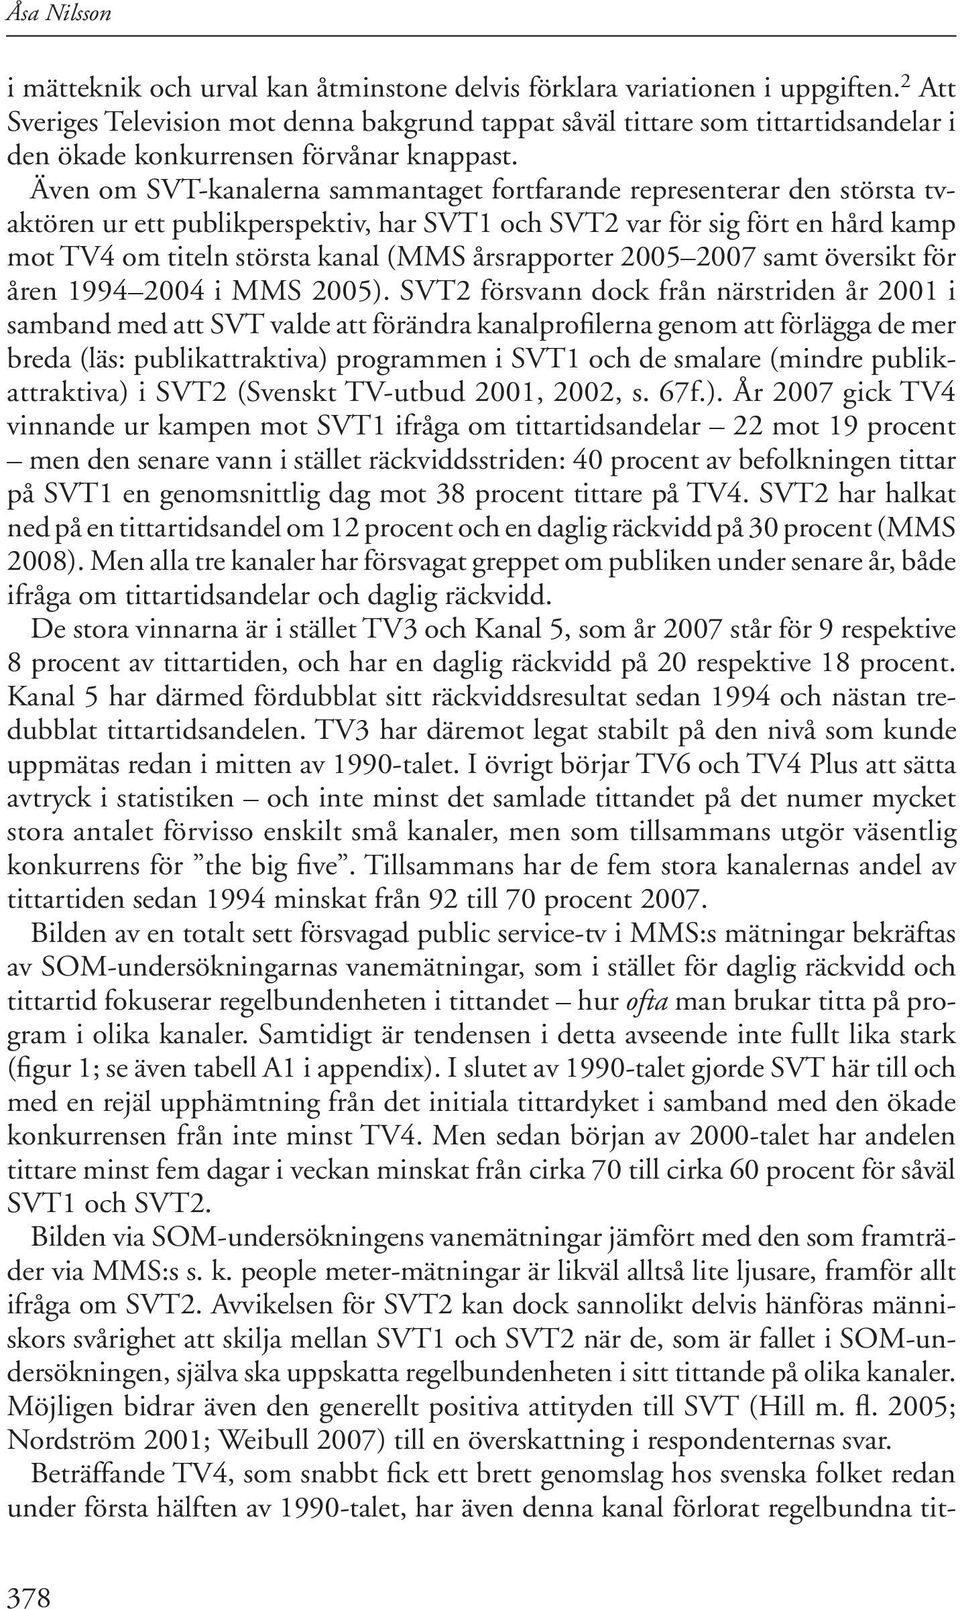 Även om SVT-kanalerna sammantaget fortfarande representerar den största tvaktören ur ett publikperspektiv, har SVT1 och SVT2 var för sig fört en hård kamp mot TV4 om titeln största kanal (MMS